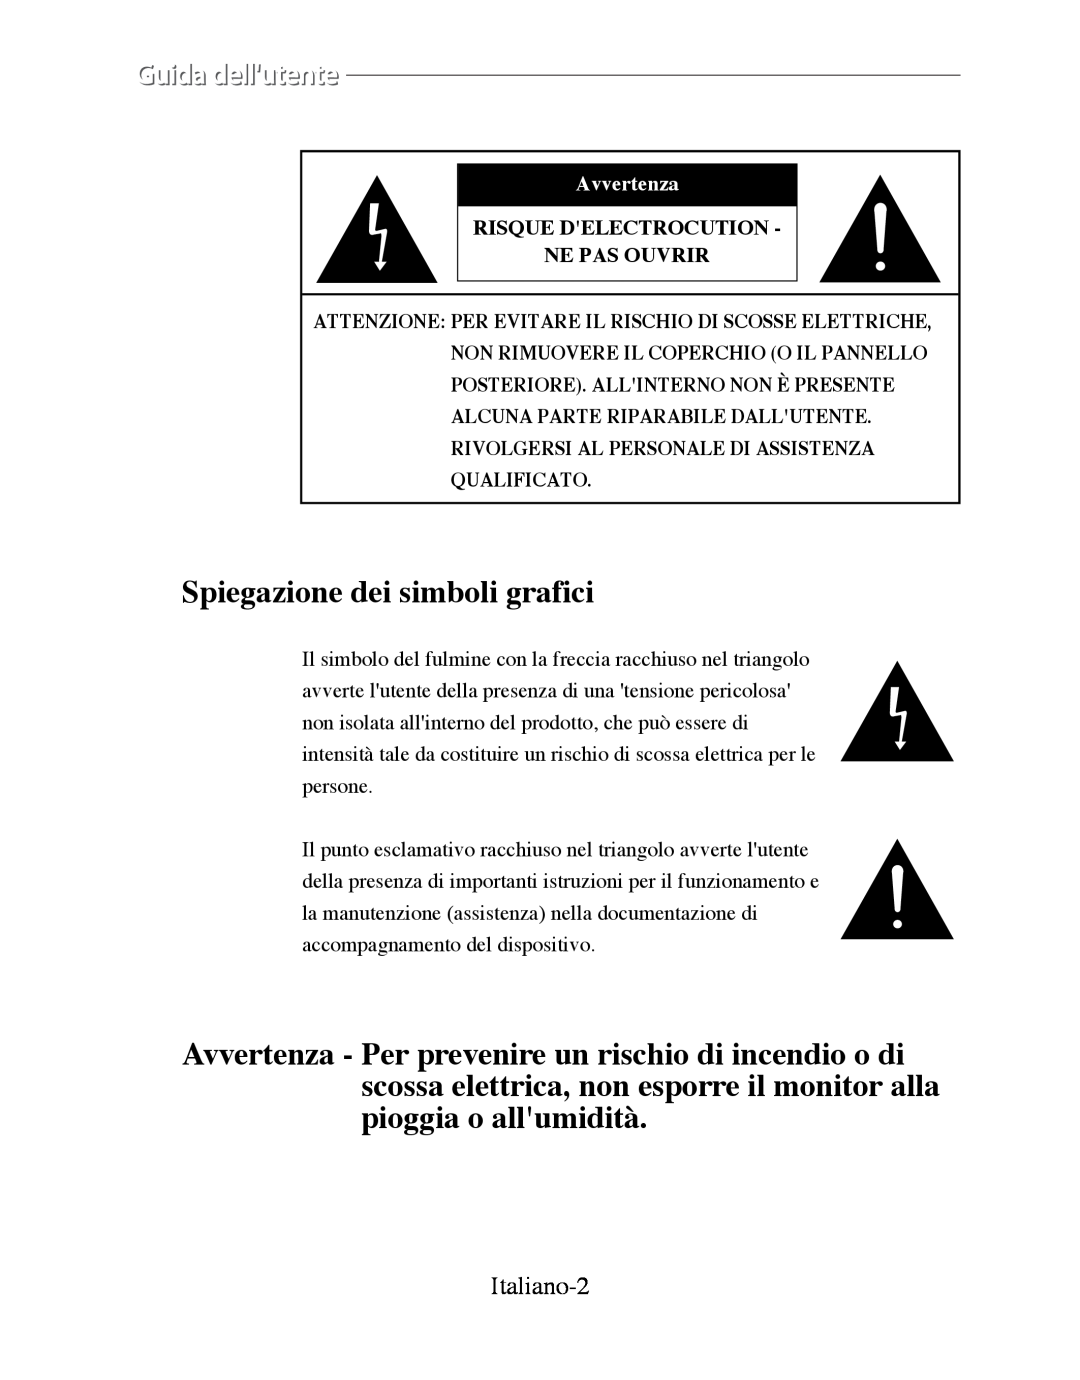 Samsung SMT-170P manual Italiano-2, Risque Delectrocution Ne Pas Ouvrir, Spiegazione dei simboli grafici, Avvertenza 